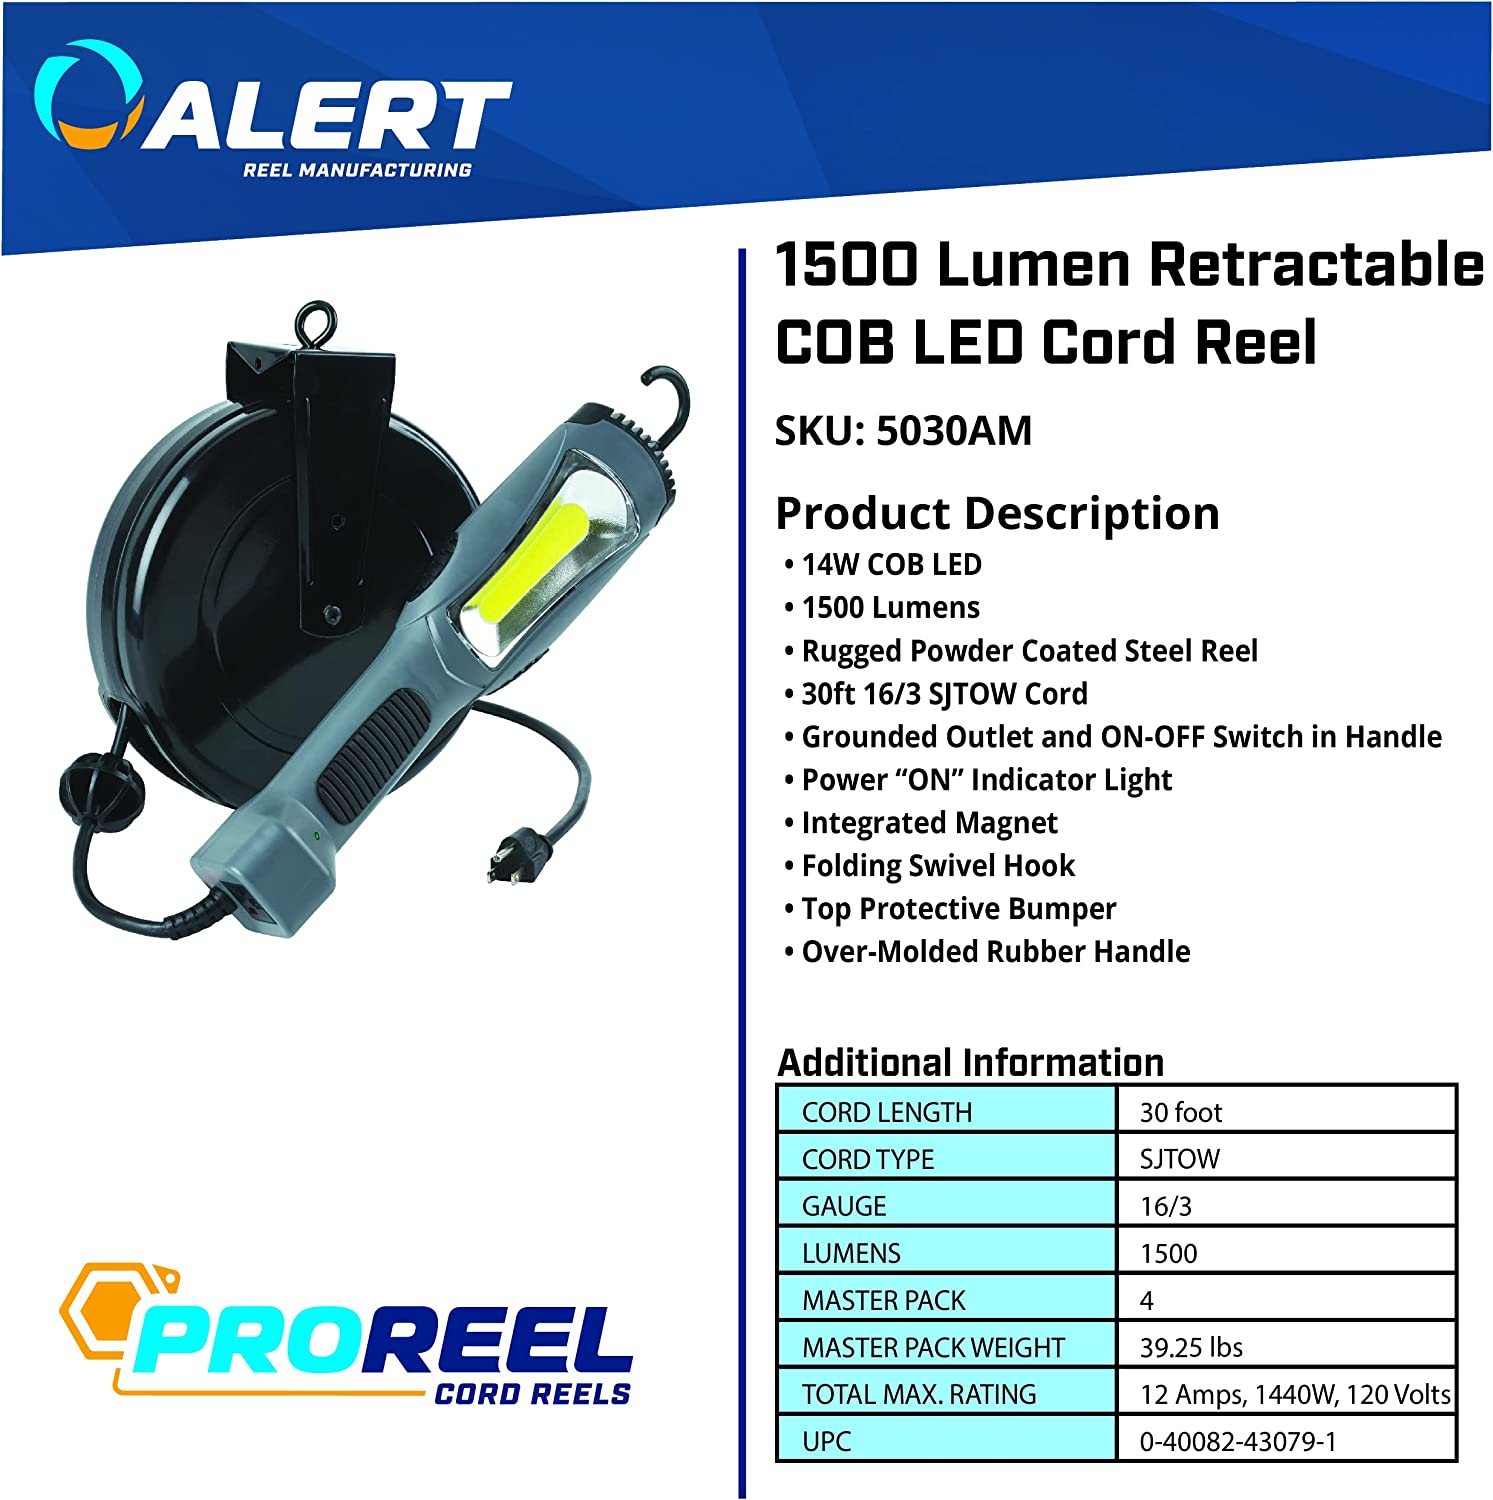 Prolite 5030AM 1300 Lumen Retractable COB LED Cord Reel, 1, Gray - E.S.N Tools